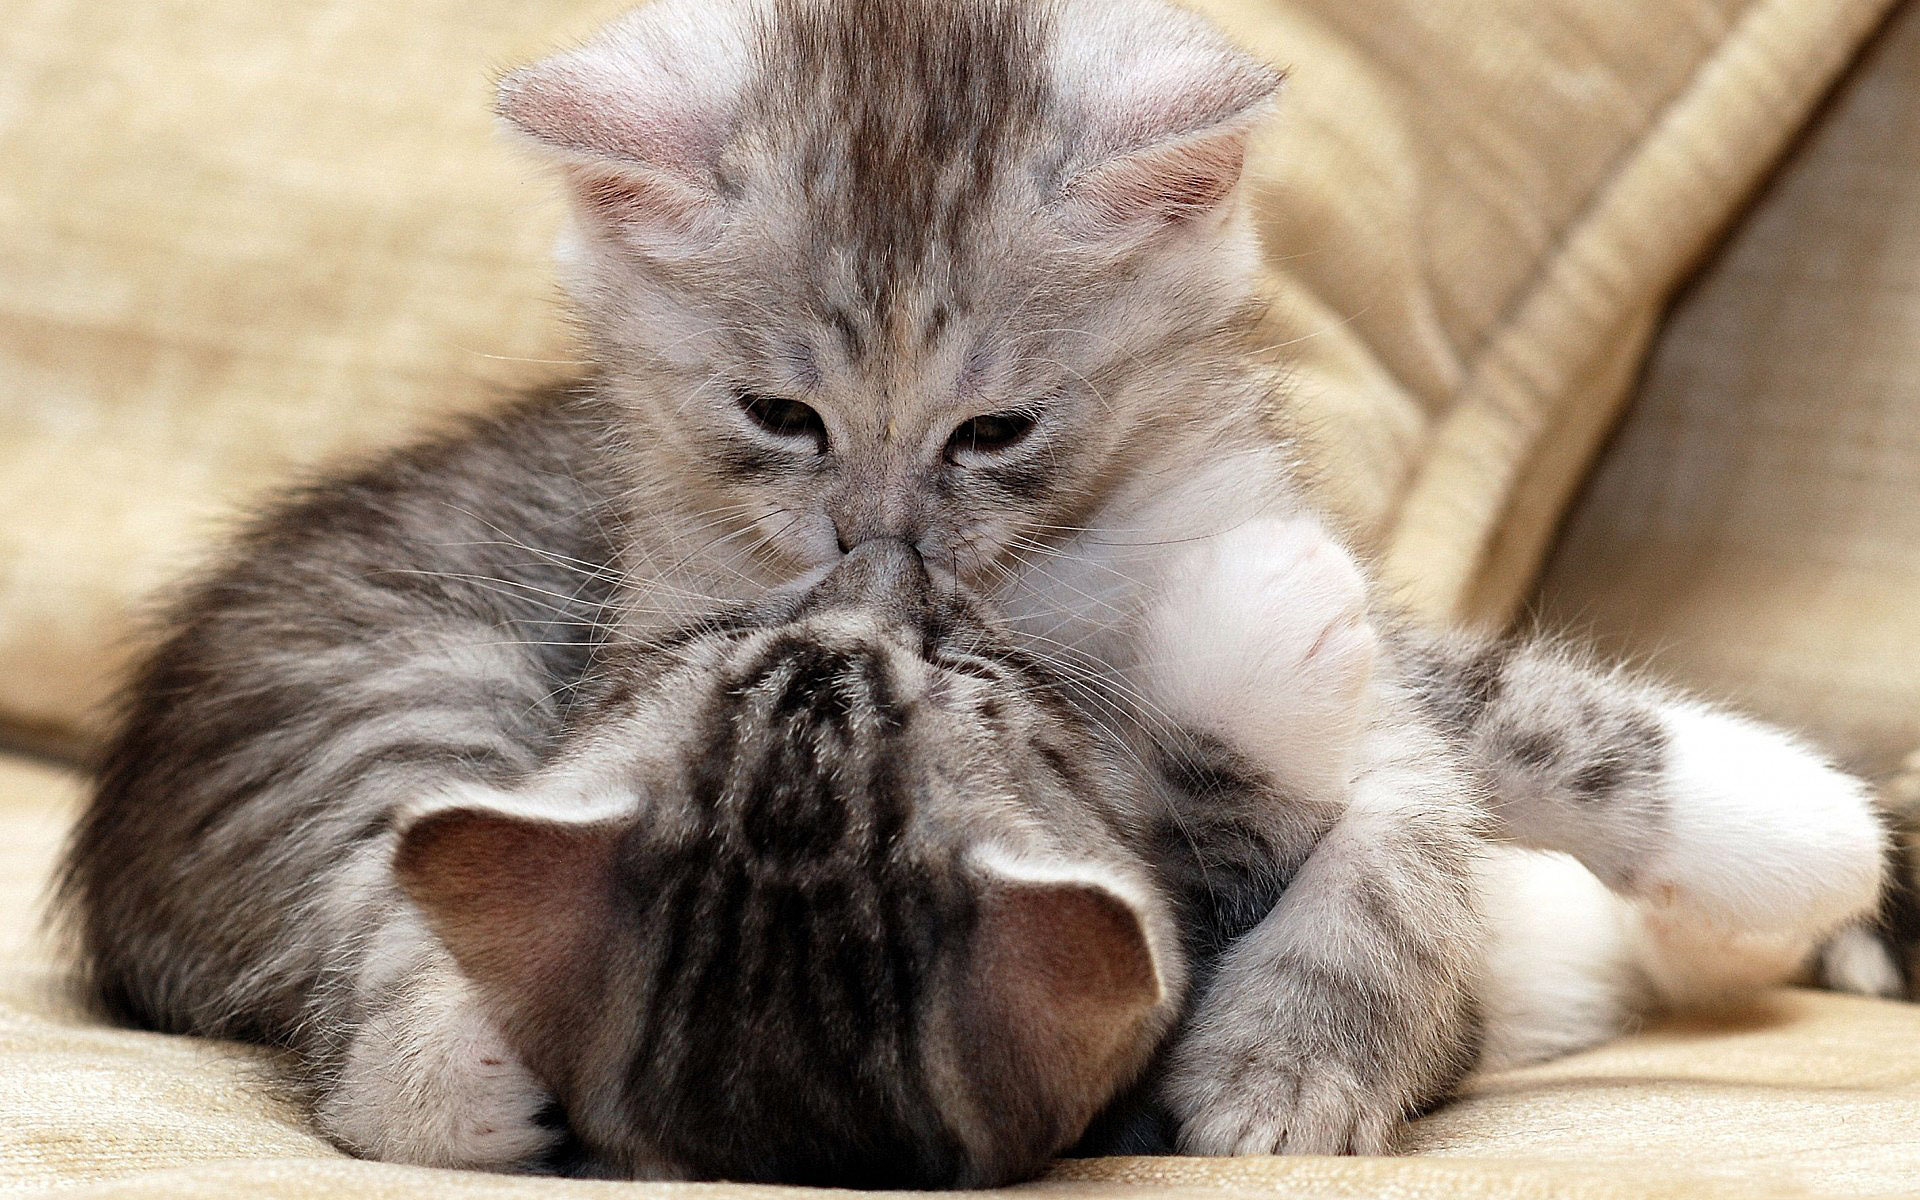 kitty love - Cute Kittens Photo (41535369) - Fanpop